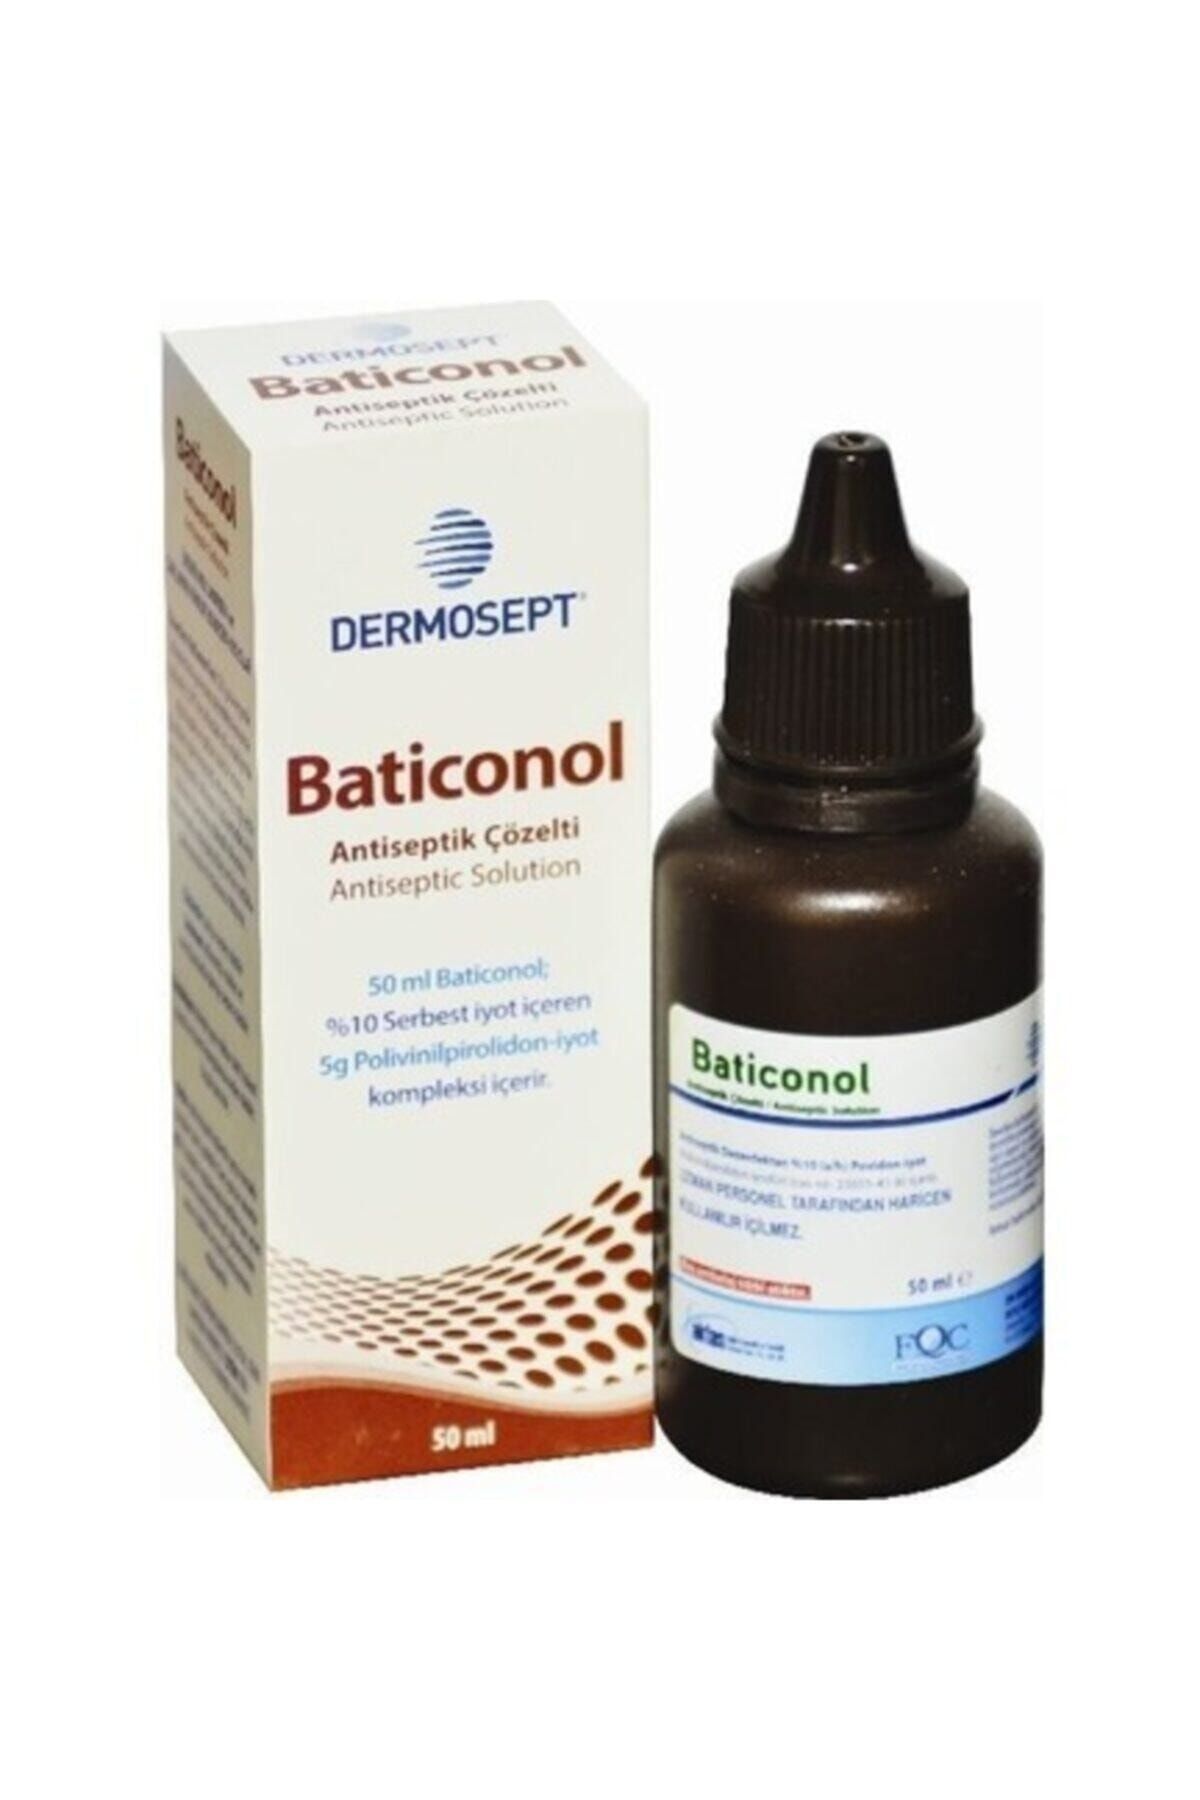 Dermosept - Baticonol Antiseptik Çözelti 100 ml. Batikon